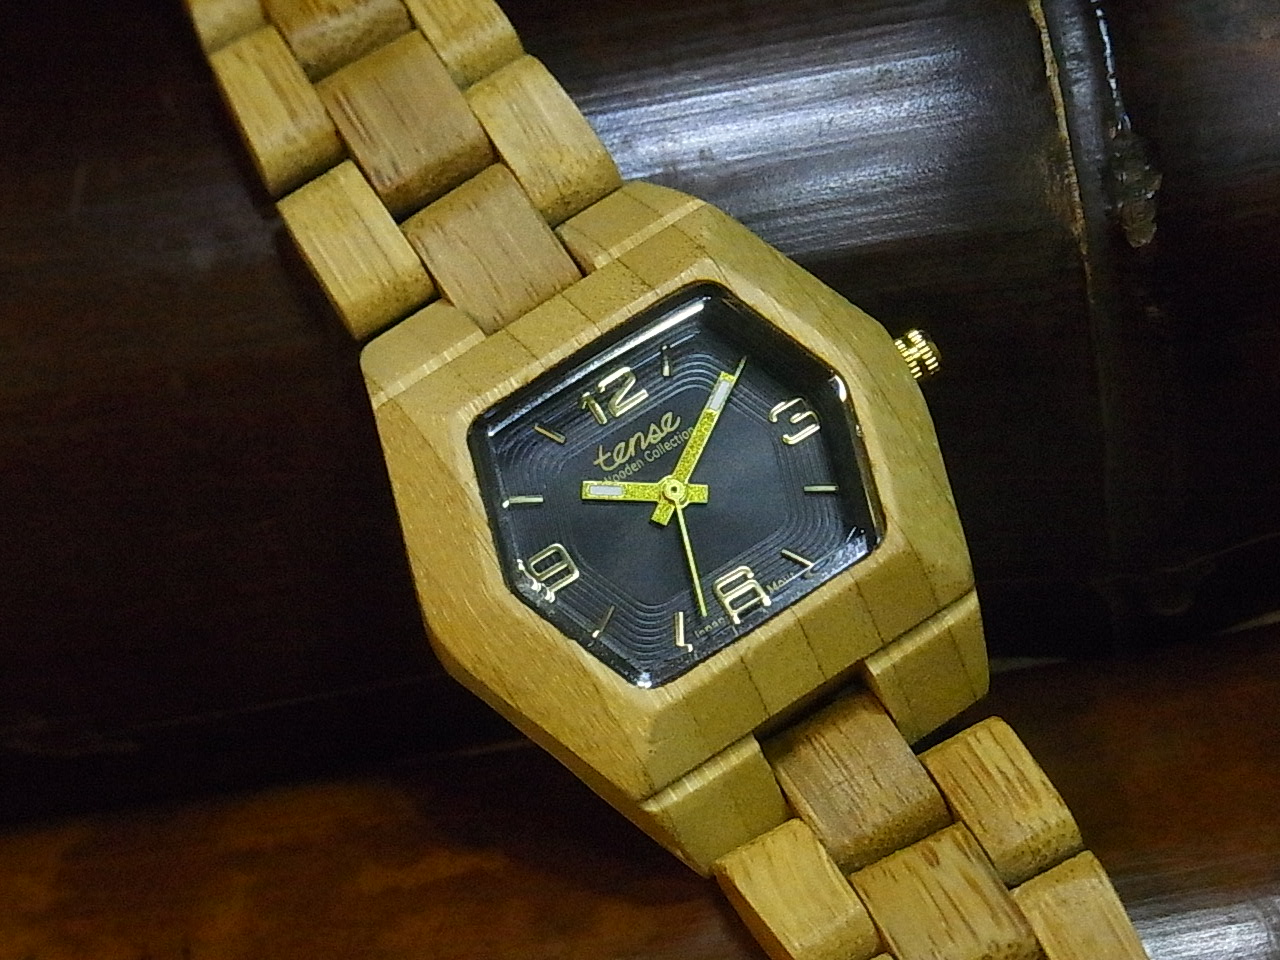 竹の腕時計,竹製腕時計,竹,腕時計,バンブー,バンブーウォッチ